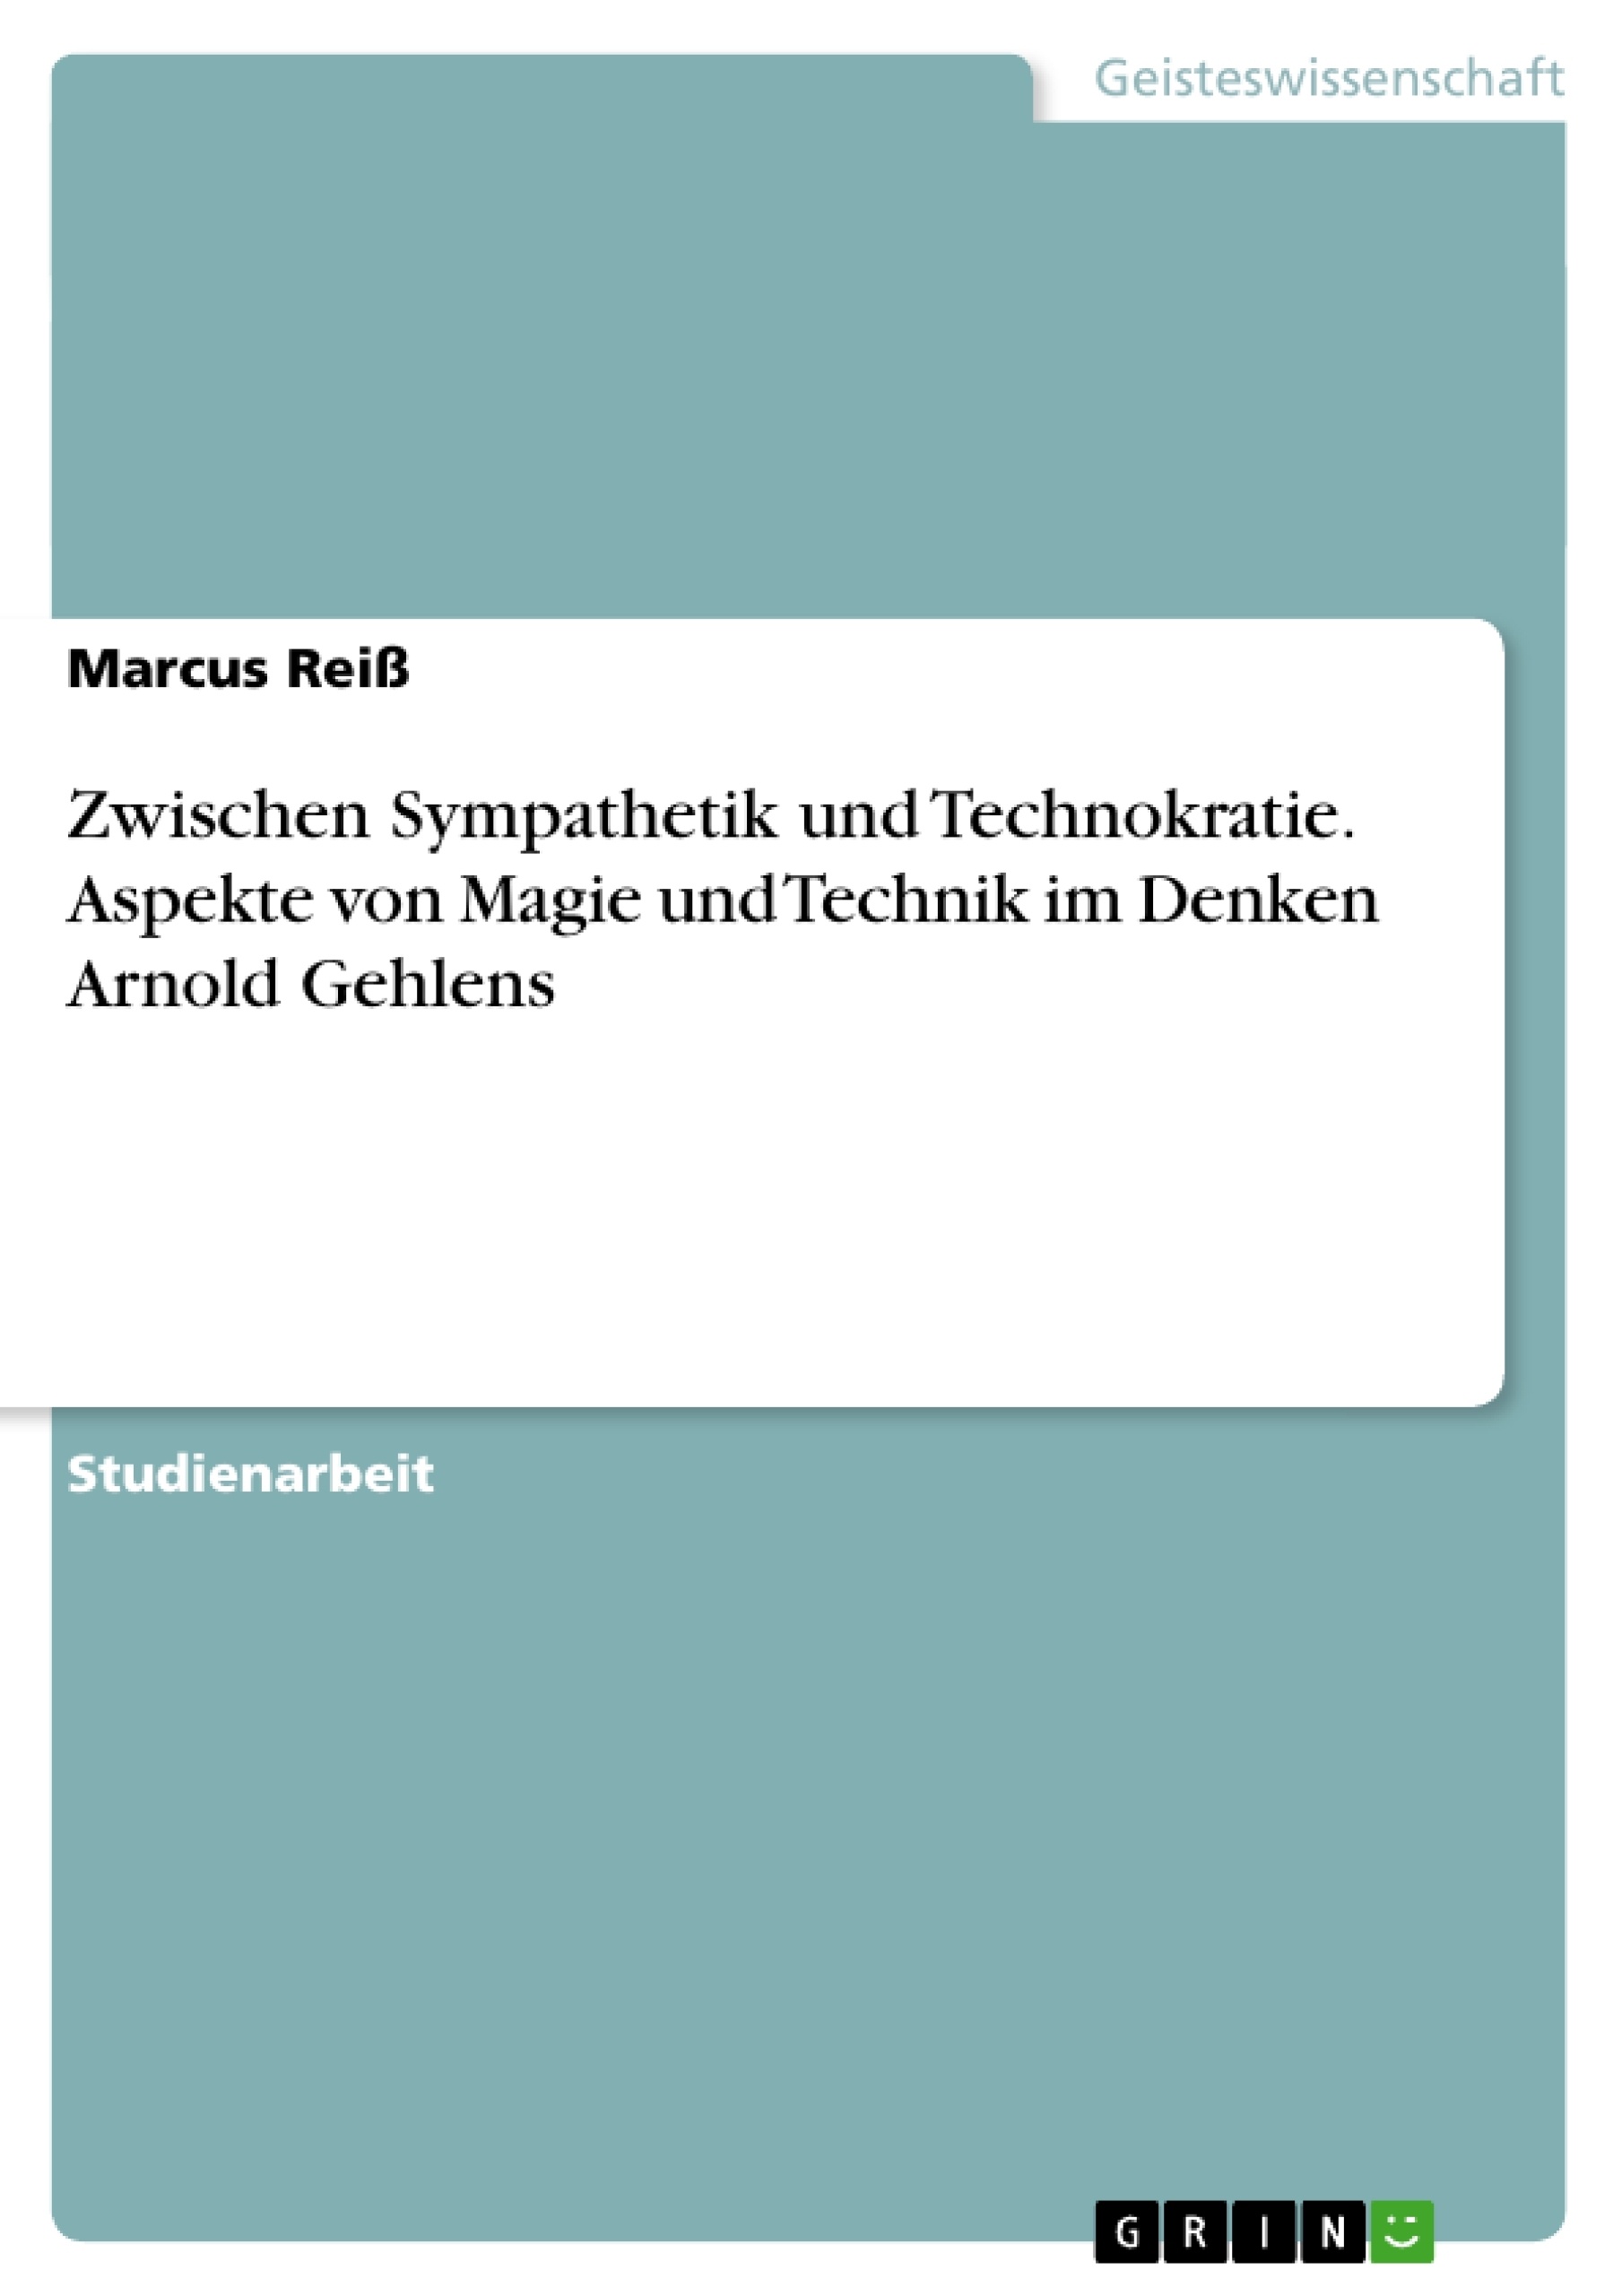 Título: Zwischen Sympathetik und Technokratie. Aspekte von Magie und Technik im Denken Arnold Gehlens